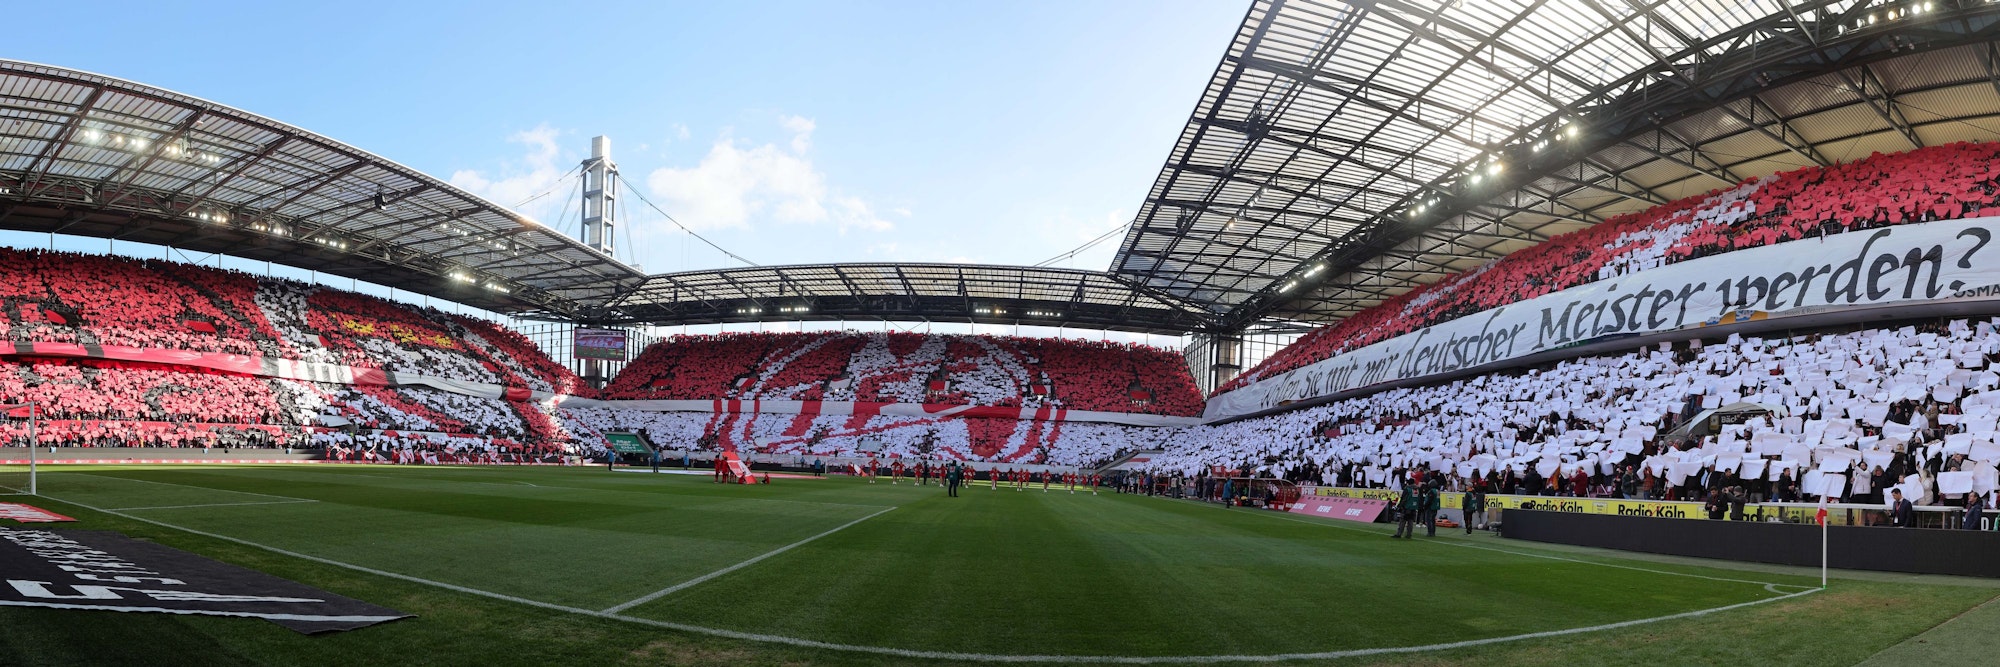 Die Fan-Choreo des 1. FC Köln im Kölner Stadion.








